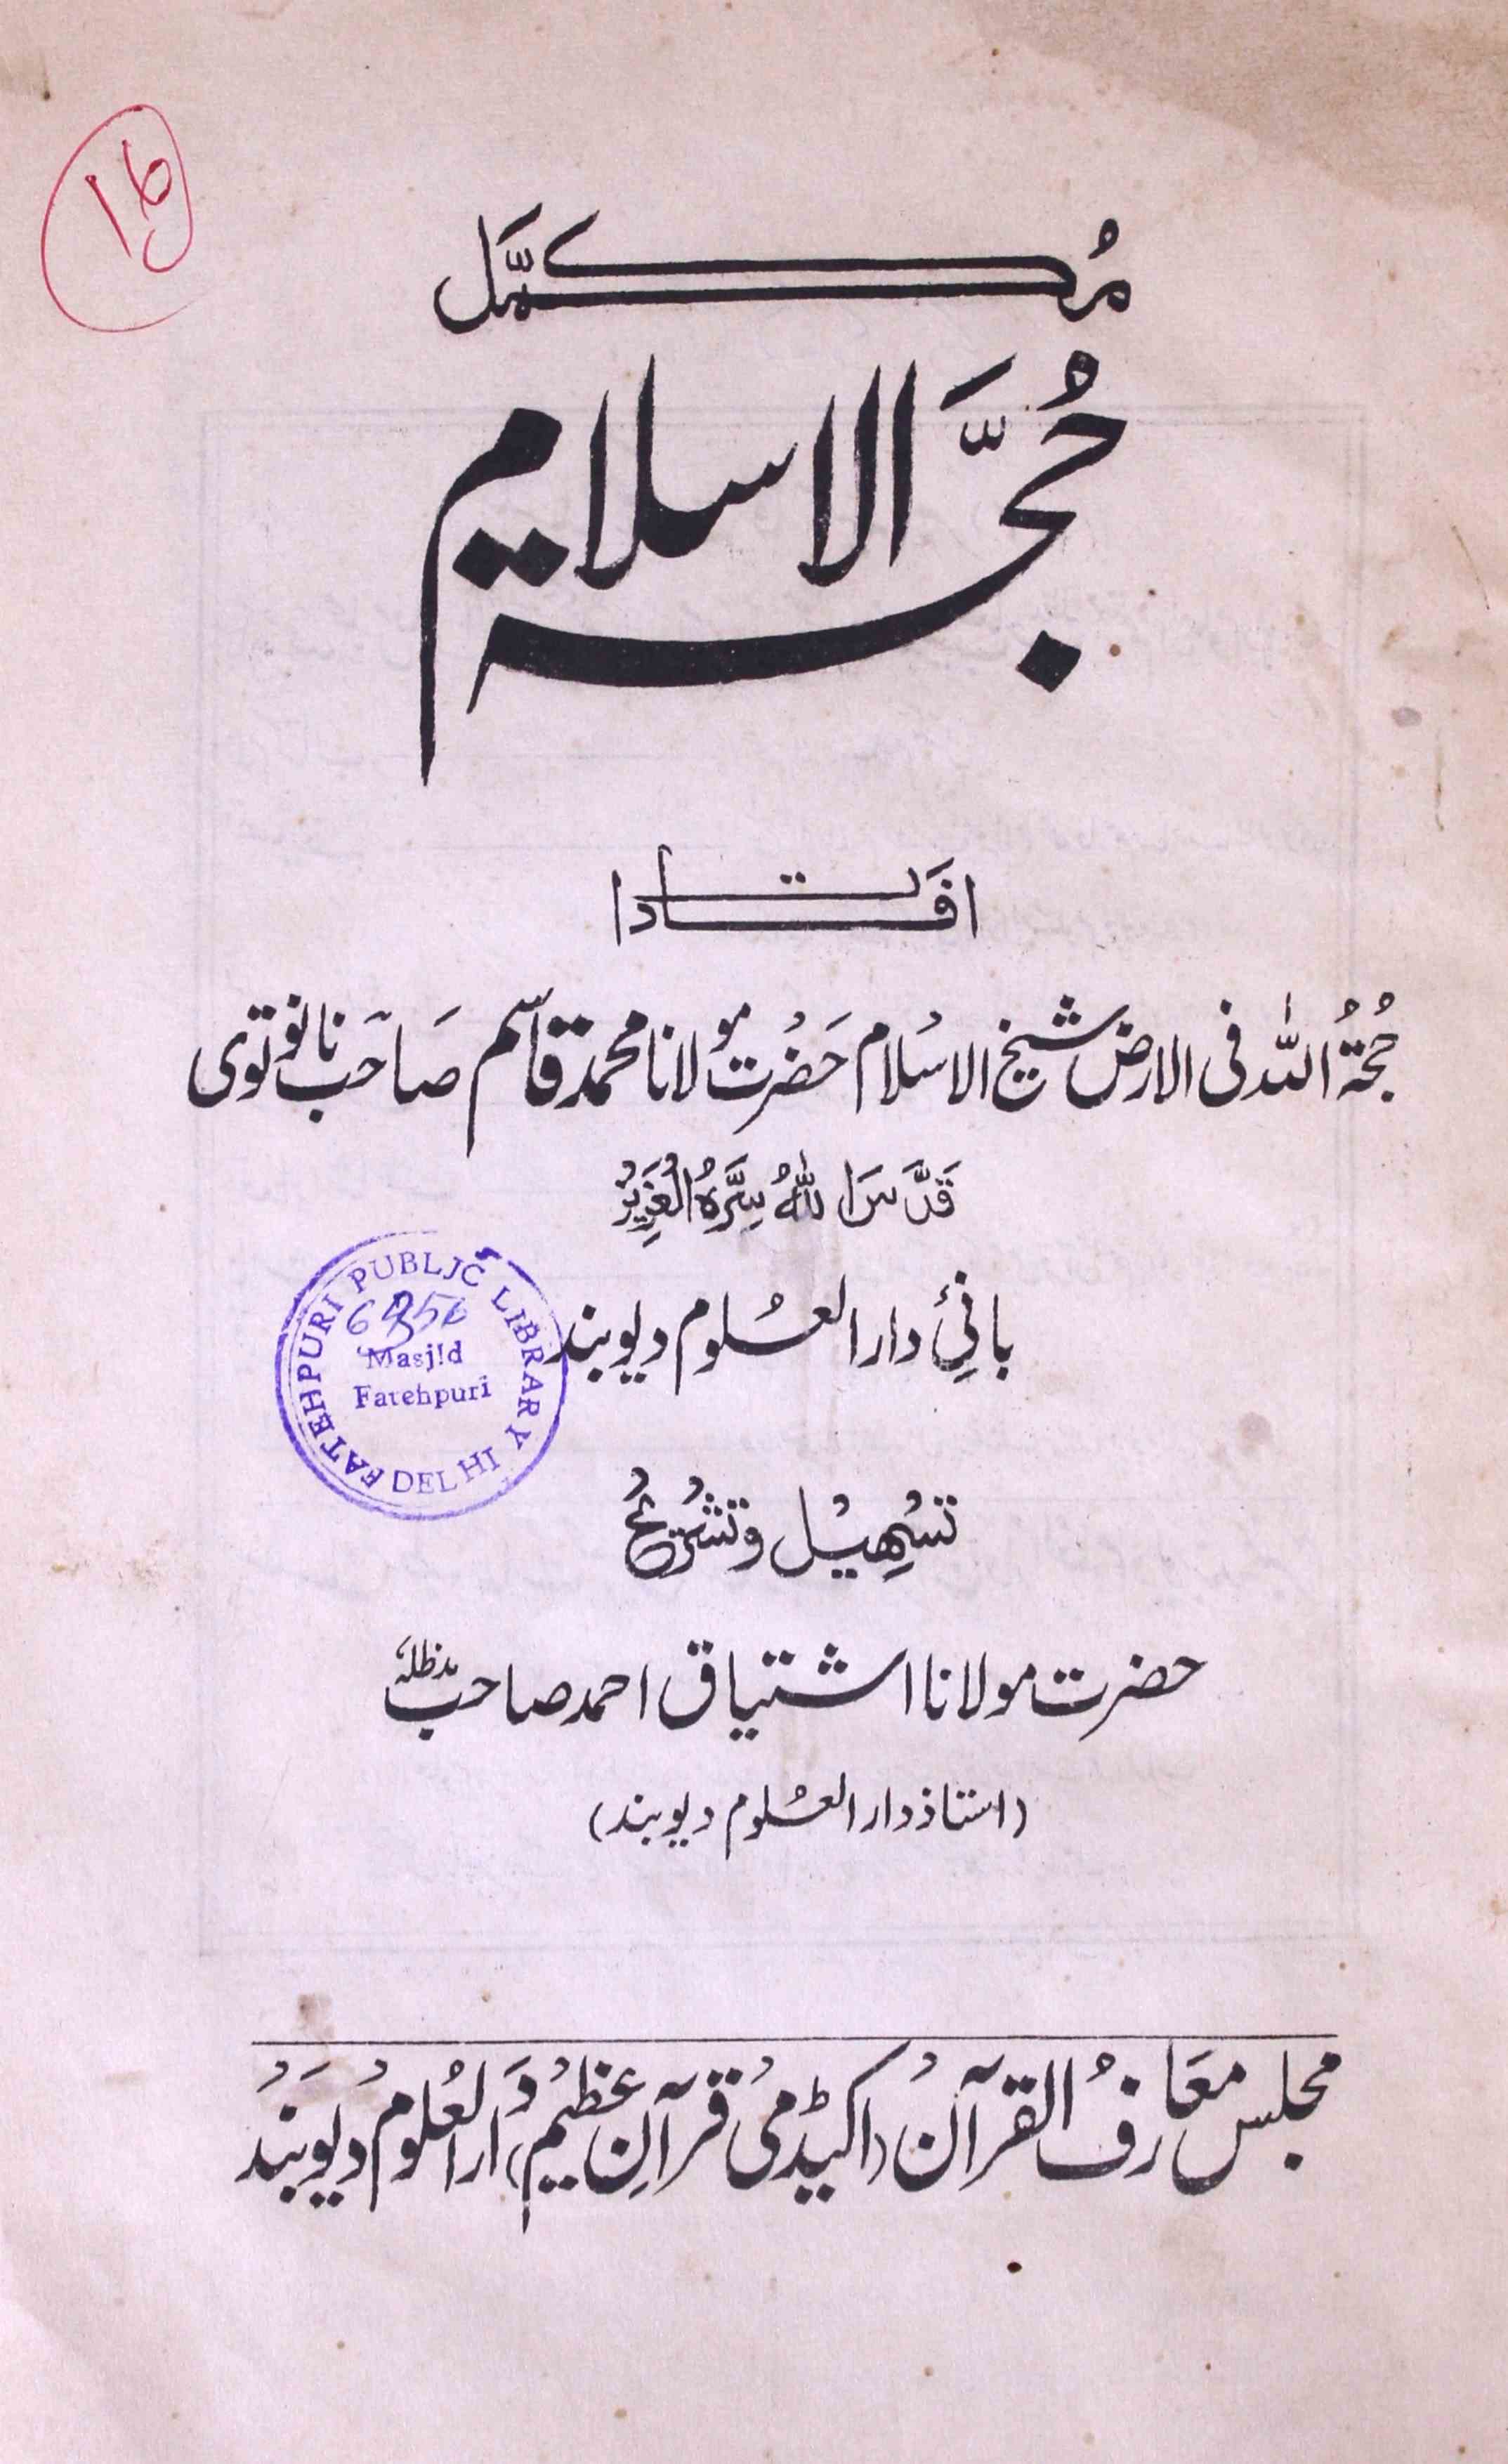  Hujjat-ul-Islam Mukammal